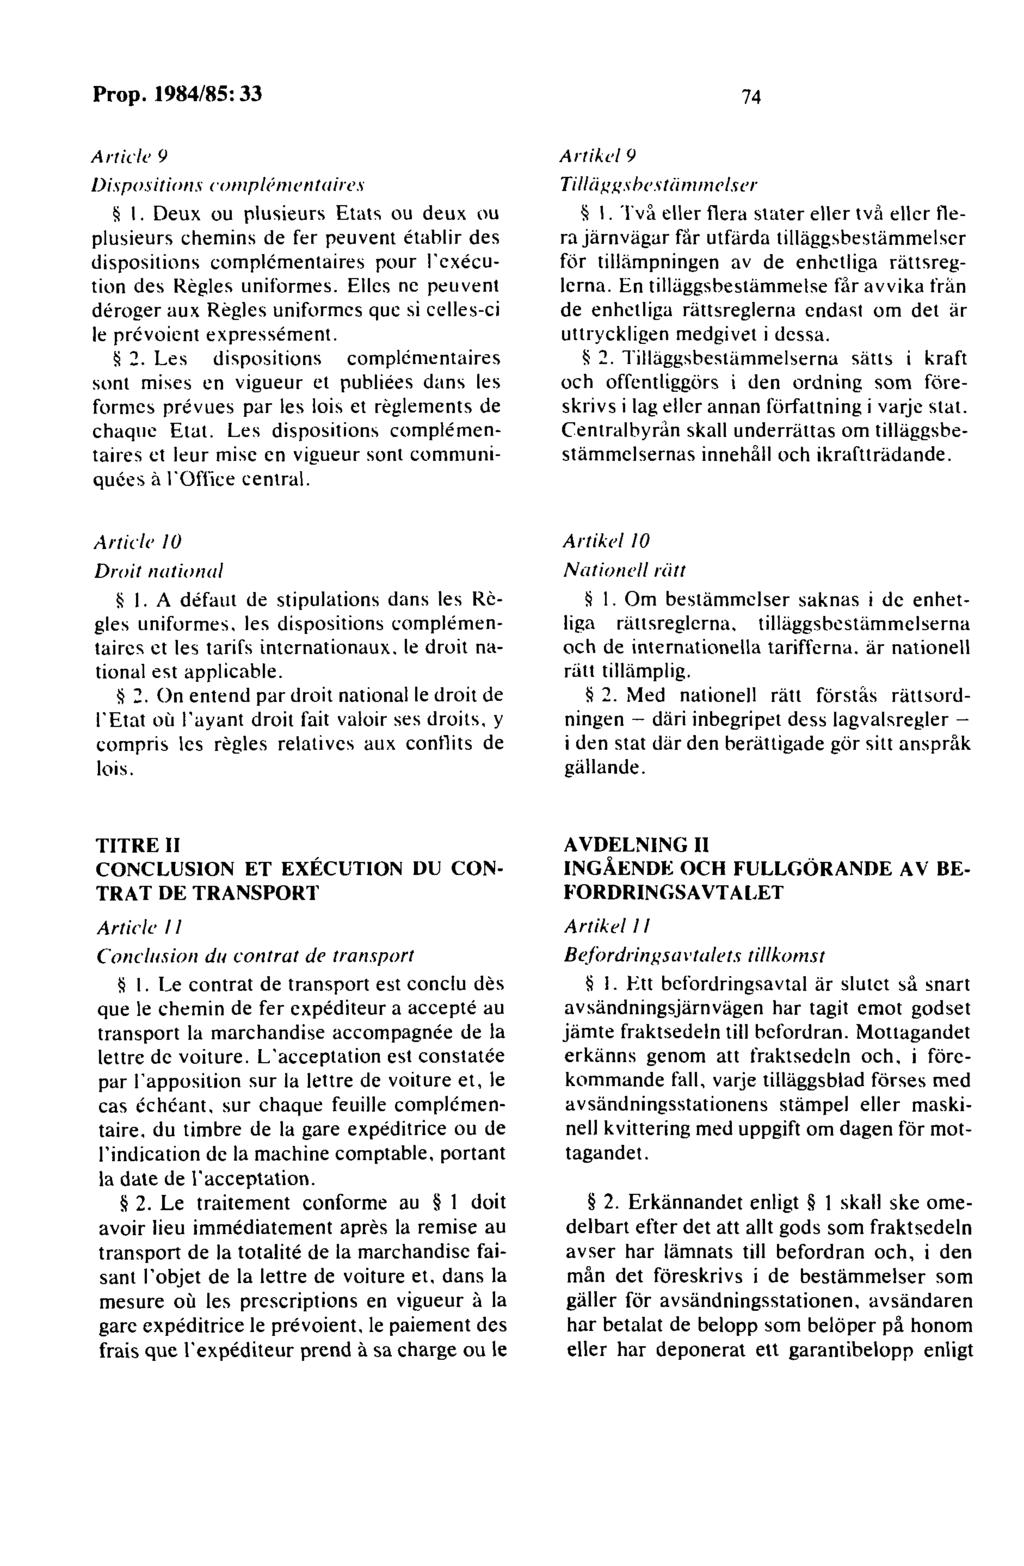 Article 9 Disr11siti11n s co111rl1'111en ta i res ~ I.